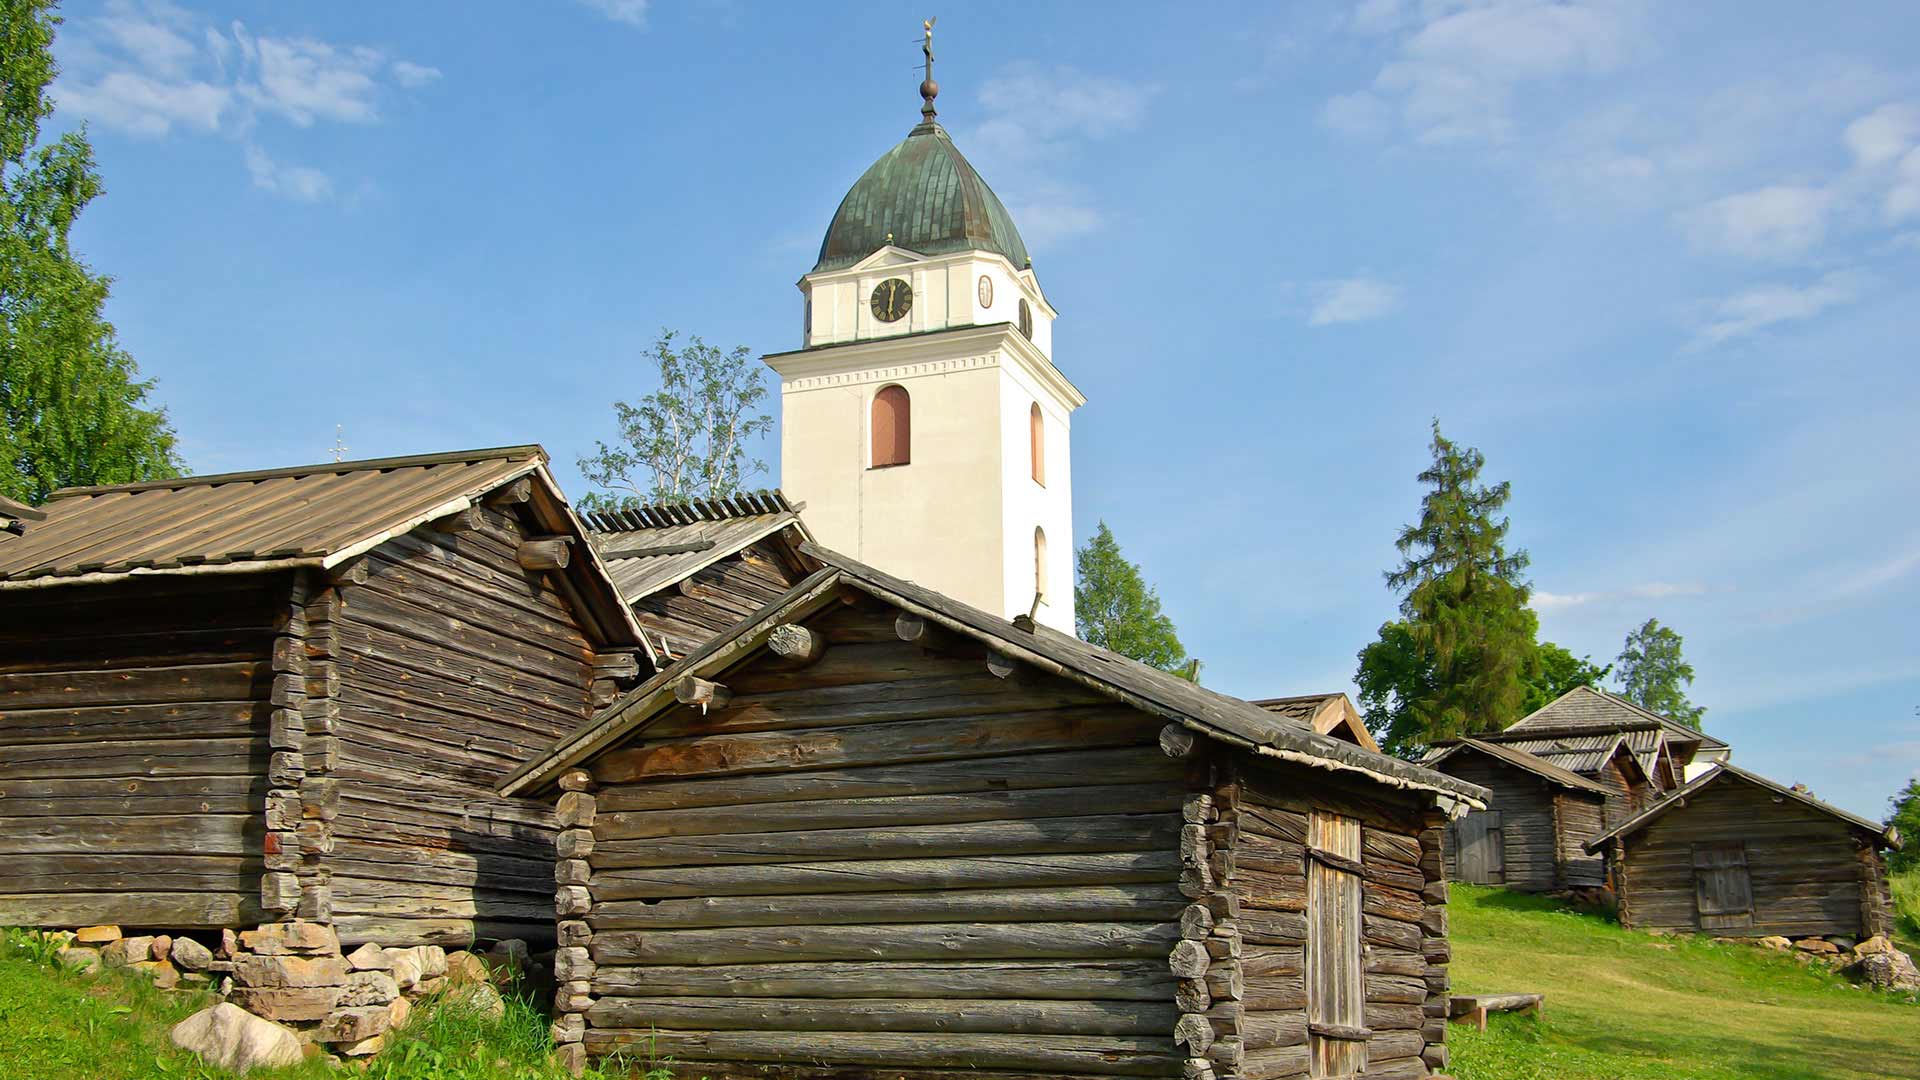 The Church tower in Dalarna in Sweden